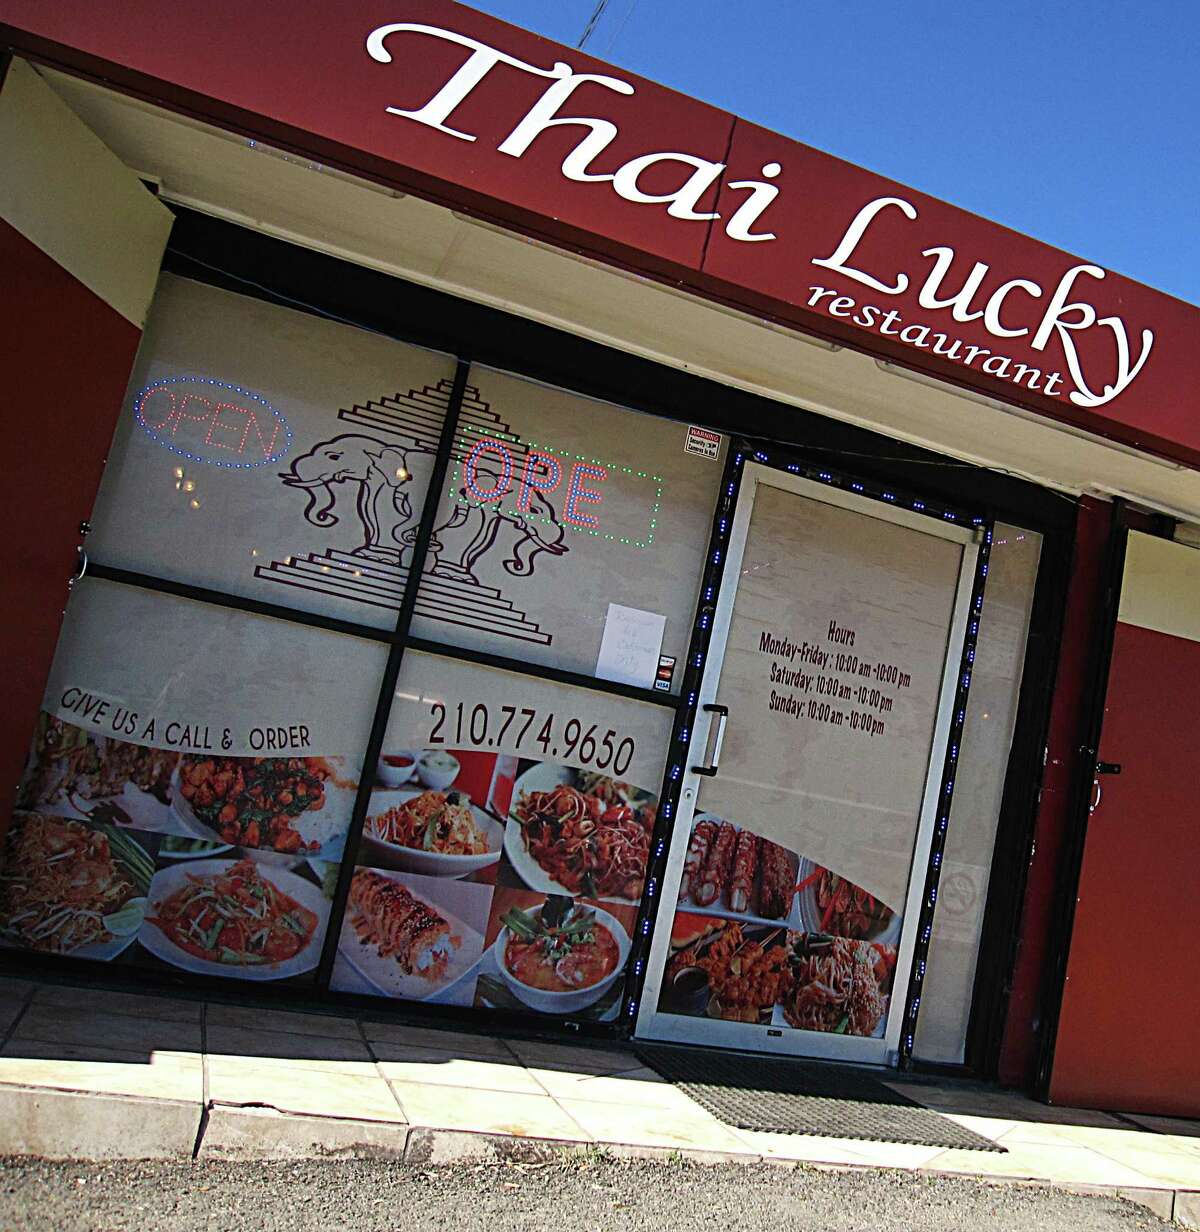 Thai Lucky opened in November 2016.